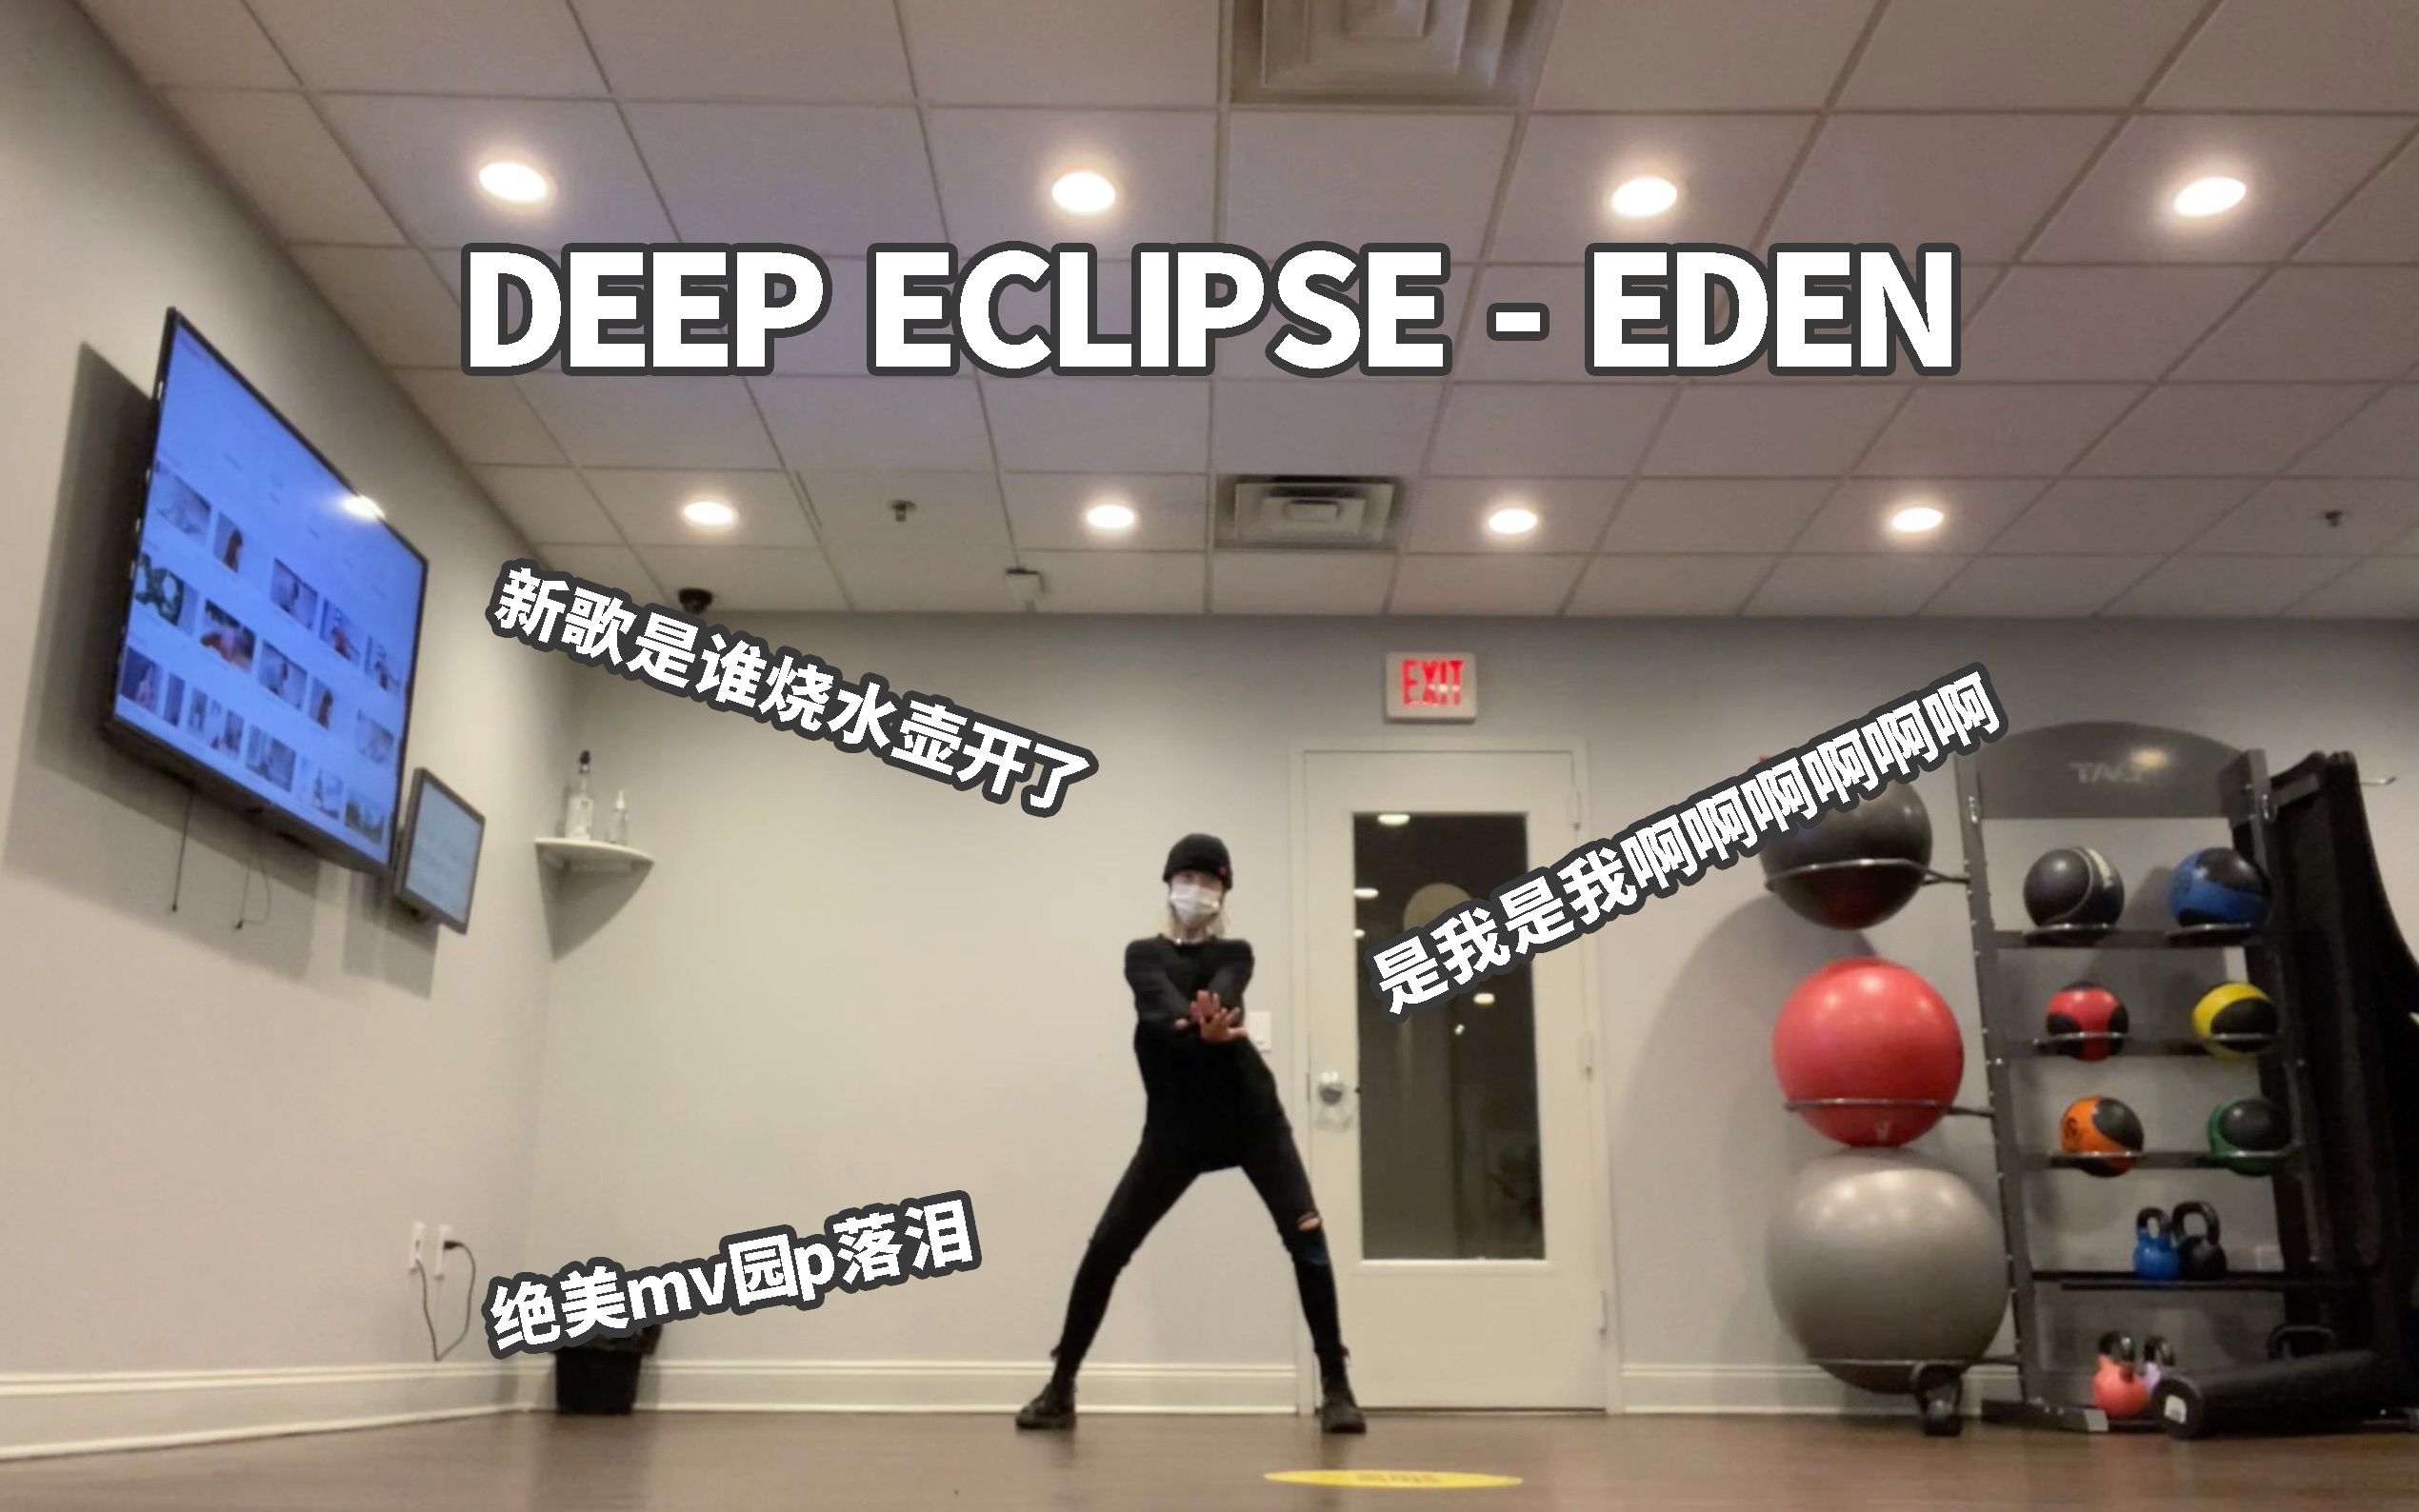 【则尾】es扒舞deep eclipse全曲-eden新歌是谁疯了啊啊